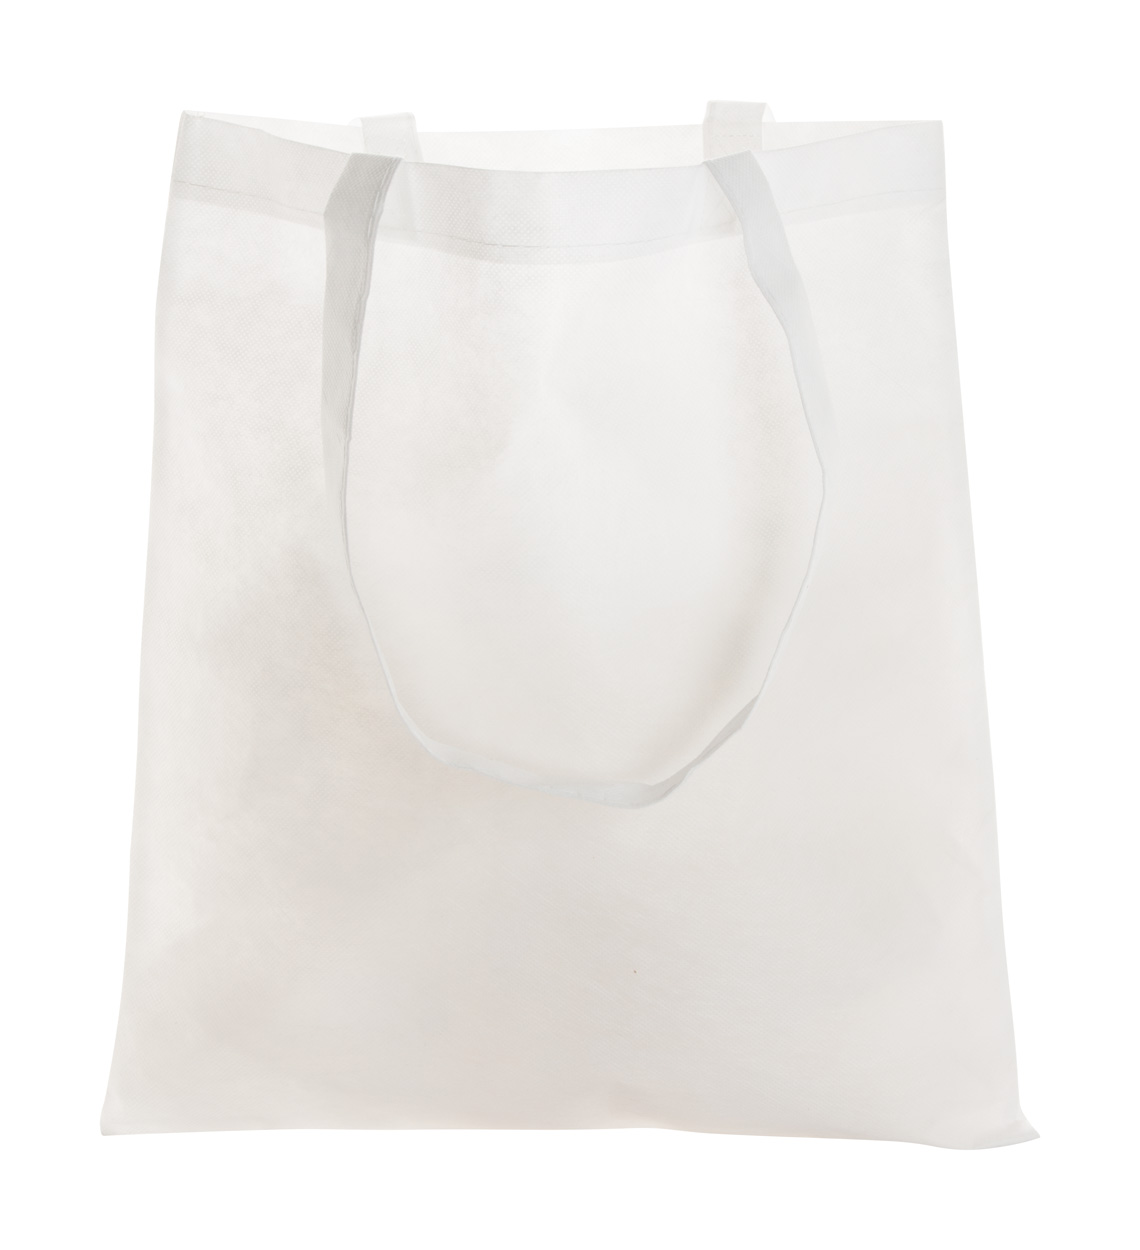 Nákupní taška MIRTAL z netkané textilie - bílá